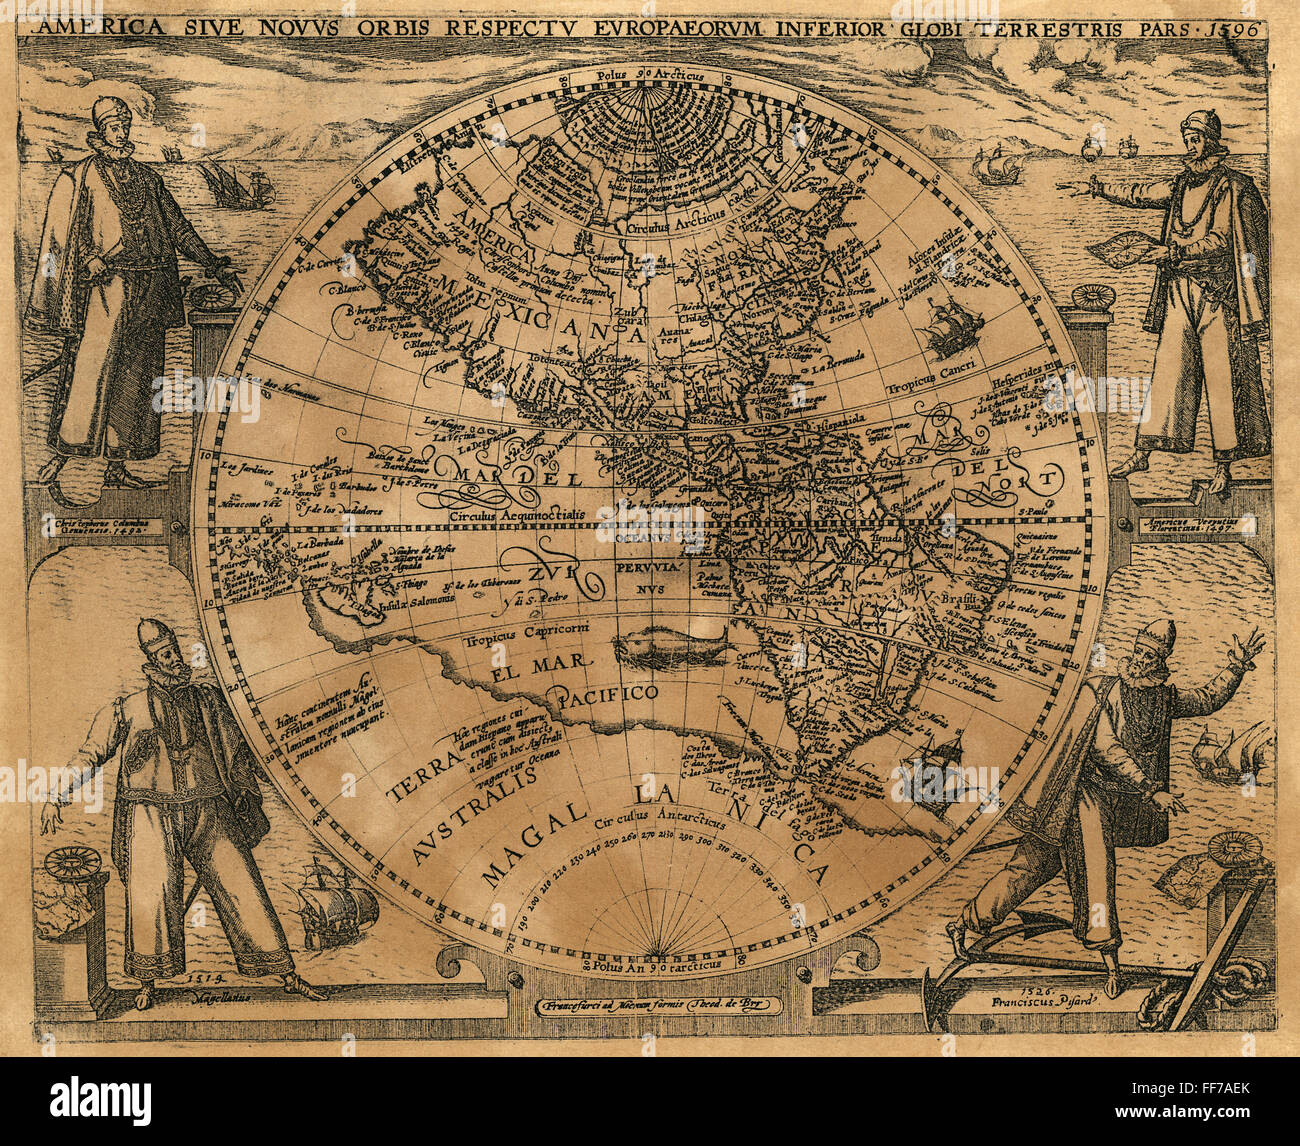 Emisfero Occidentale, 1596. /NTheodore de Bry la mappa dell'emisfero occidentale, 1596, circondato dagli esploratori (in senso orario dalla posizione in alto a sinistra) Colombo, Vespucci, Pizarro, e Magellan. Foto Stock